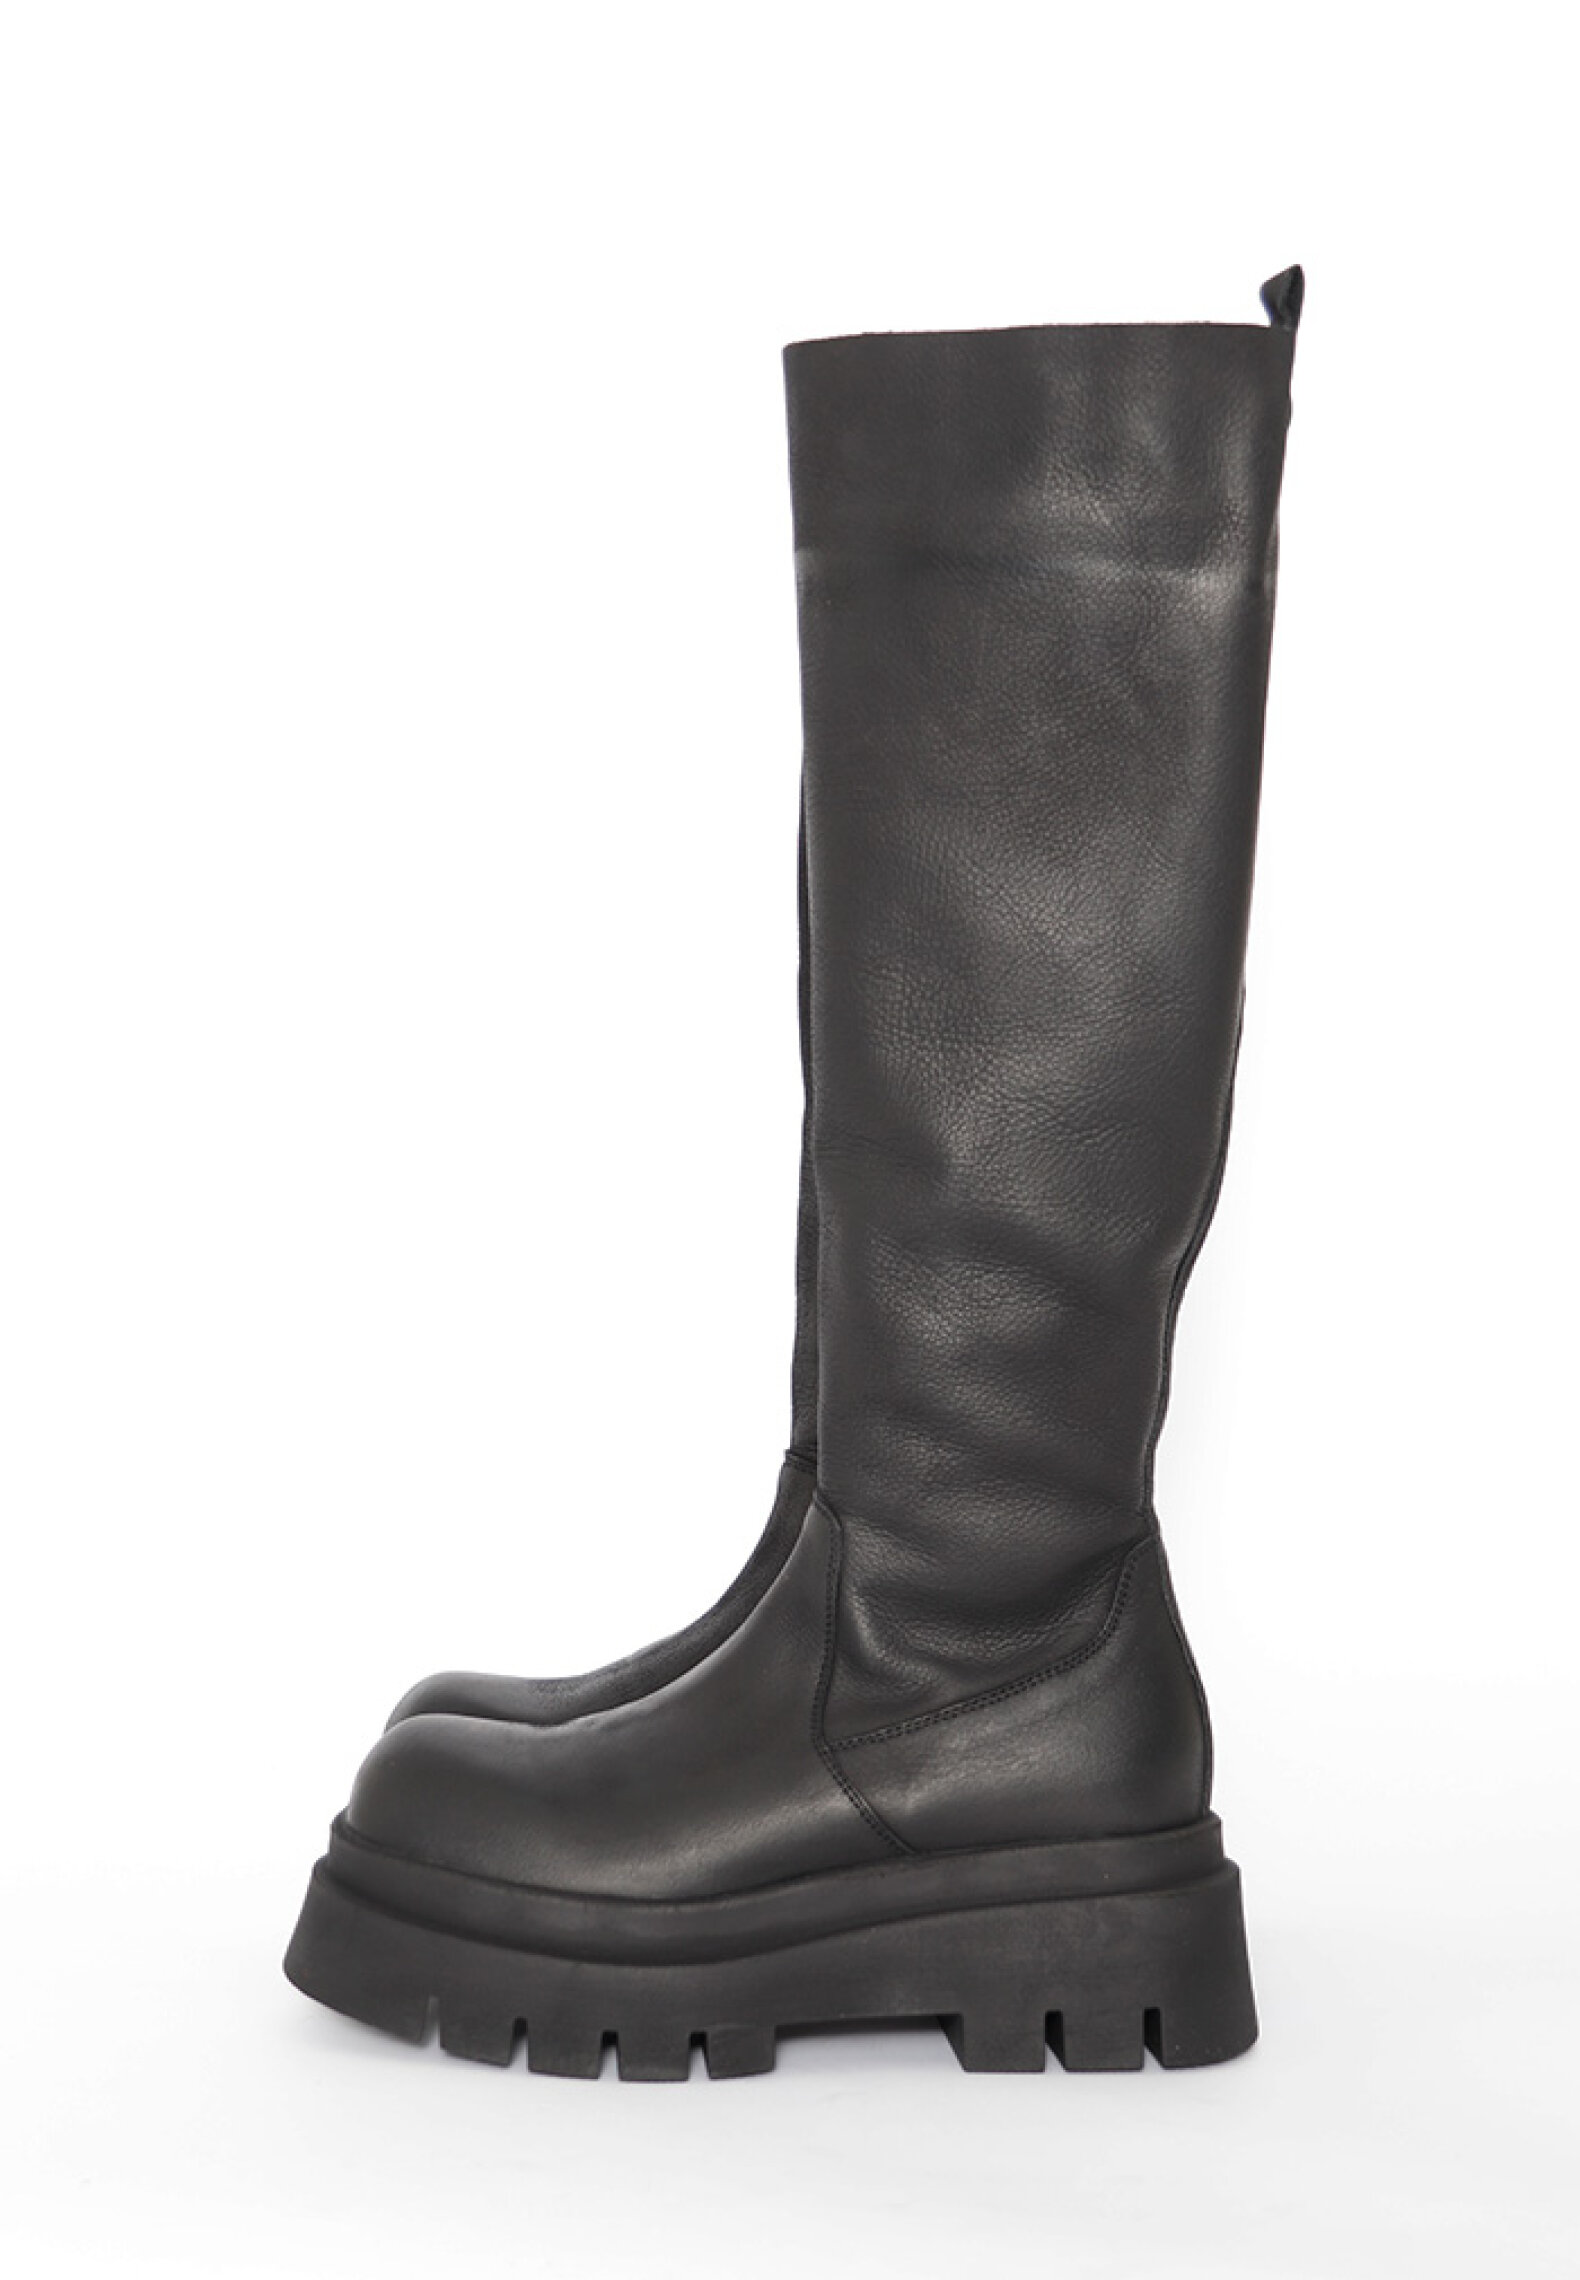 Long boots - Lofina - Long boot with a zipper